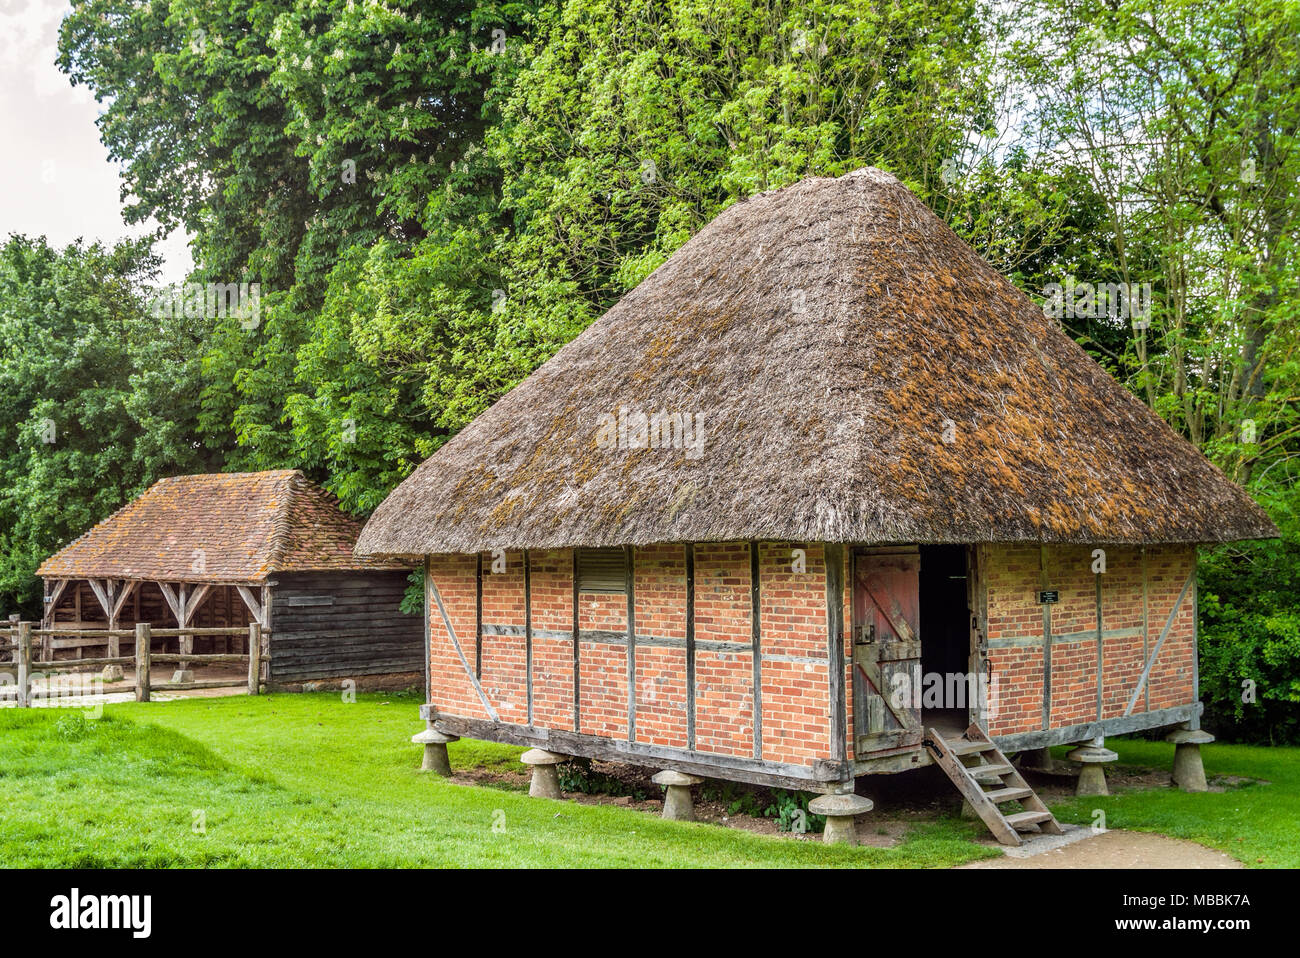 Maisons historiques exposées au musée en plein air Weald & Downland à Singleton, West Sussex, Angleterre Banque D'Images